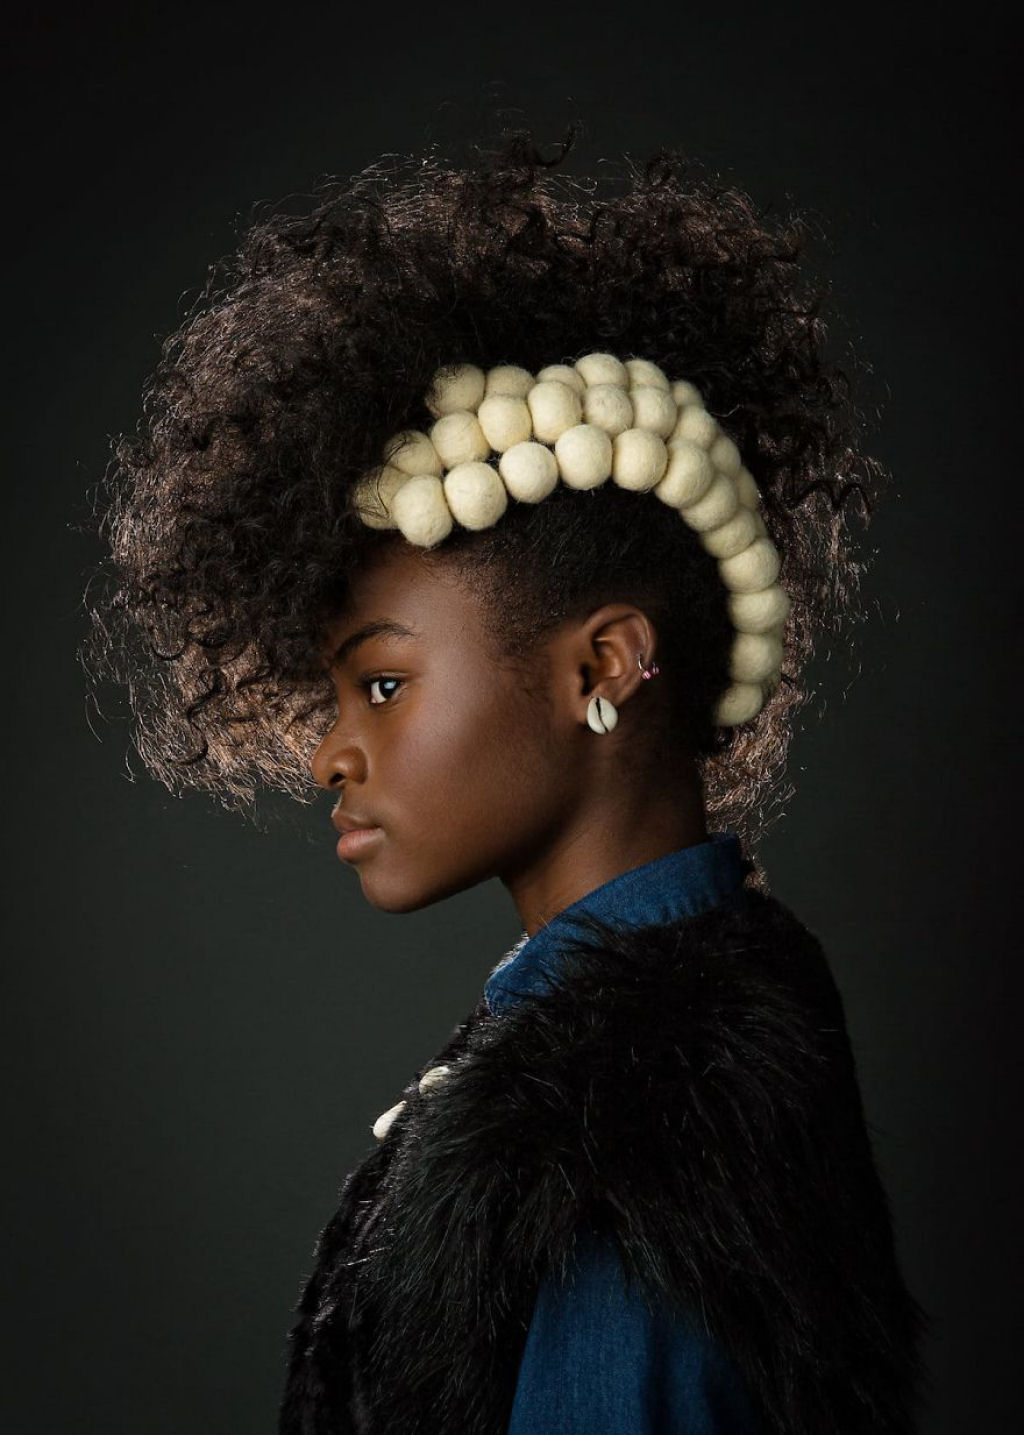 Retratos inspirados destacam a beleza do cabelo crespo para que outras garotas parem de escond-lo 03